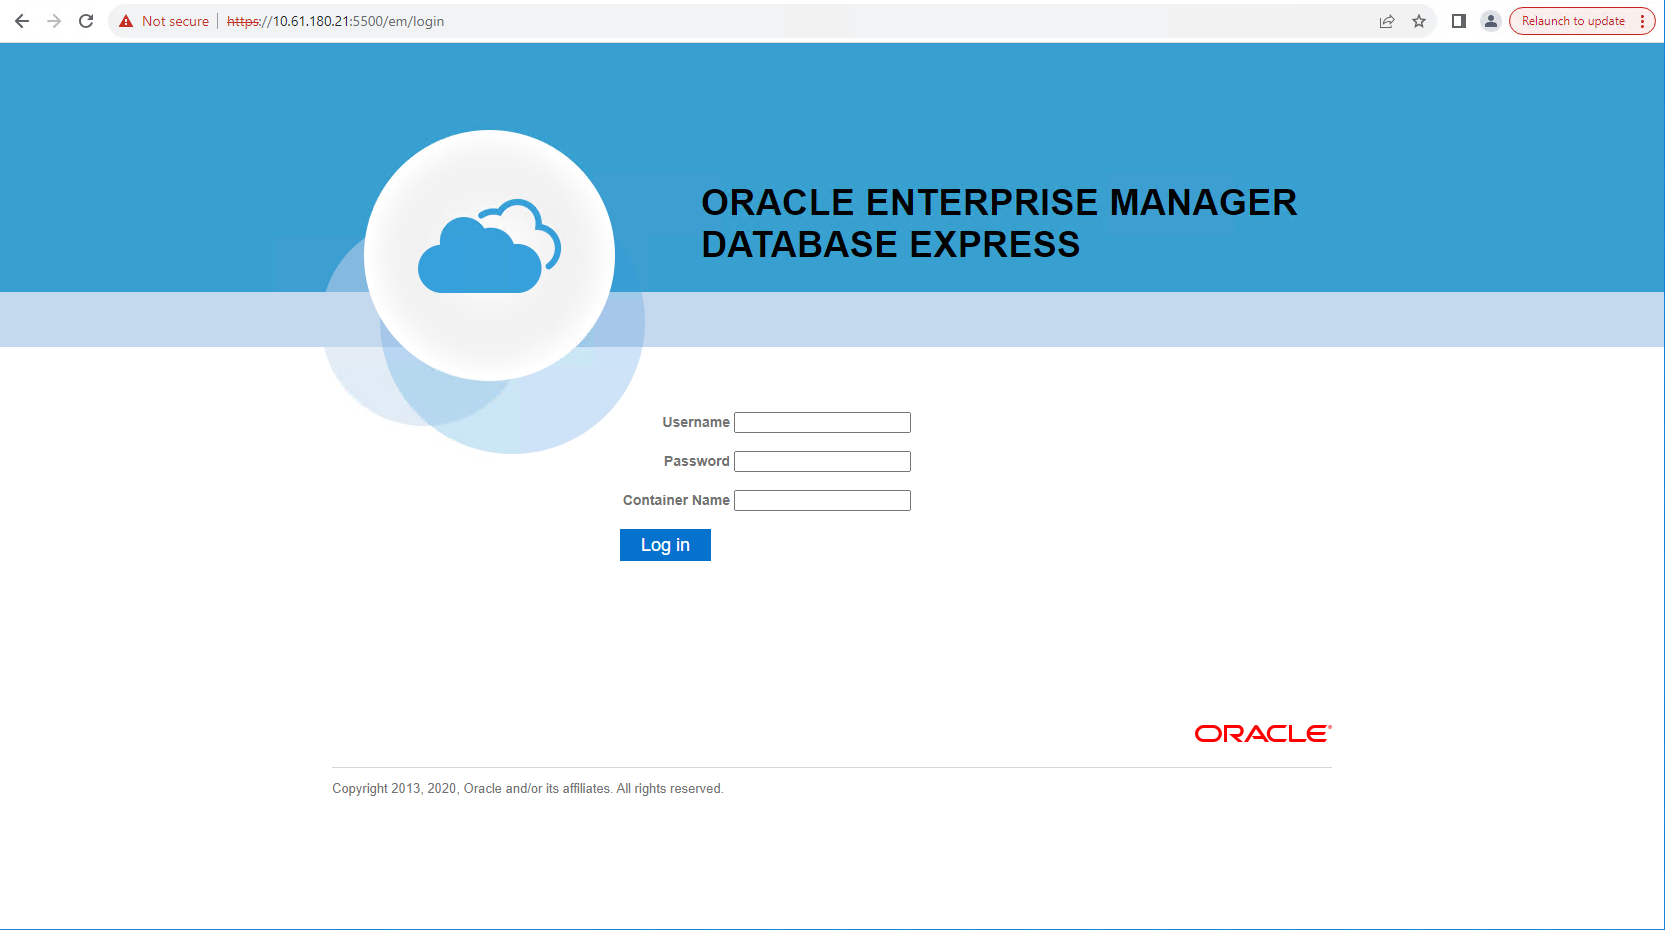 Cette image fournit un écran de connexion pour Oracle Enterprise Manager Express